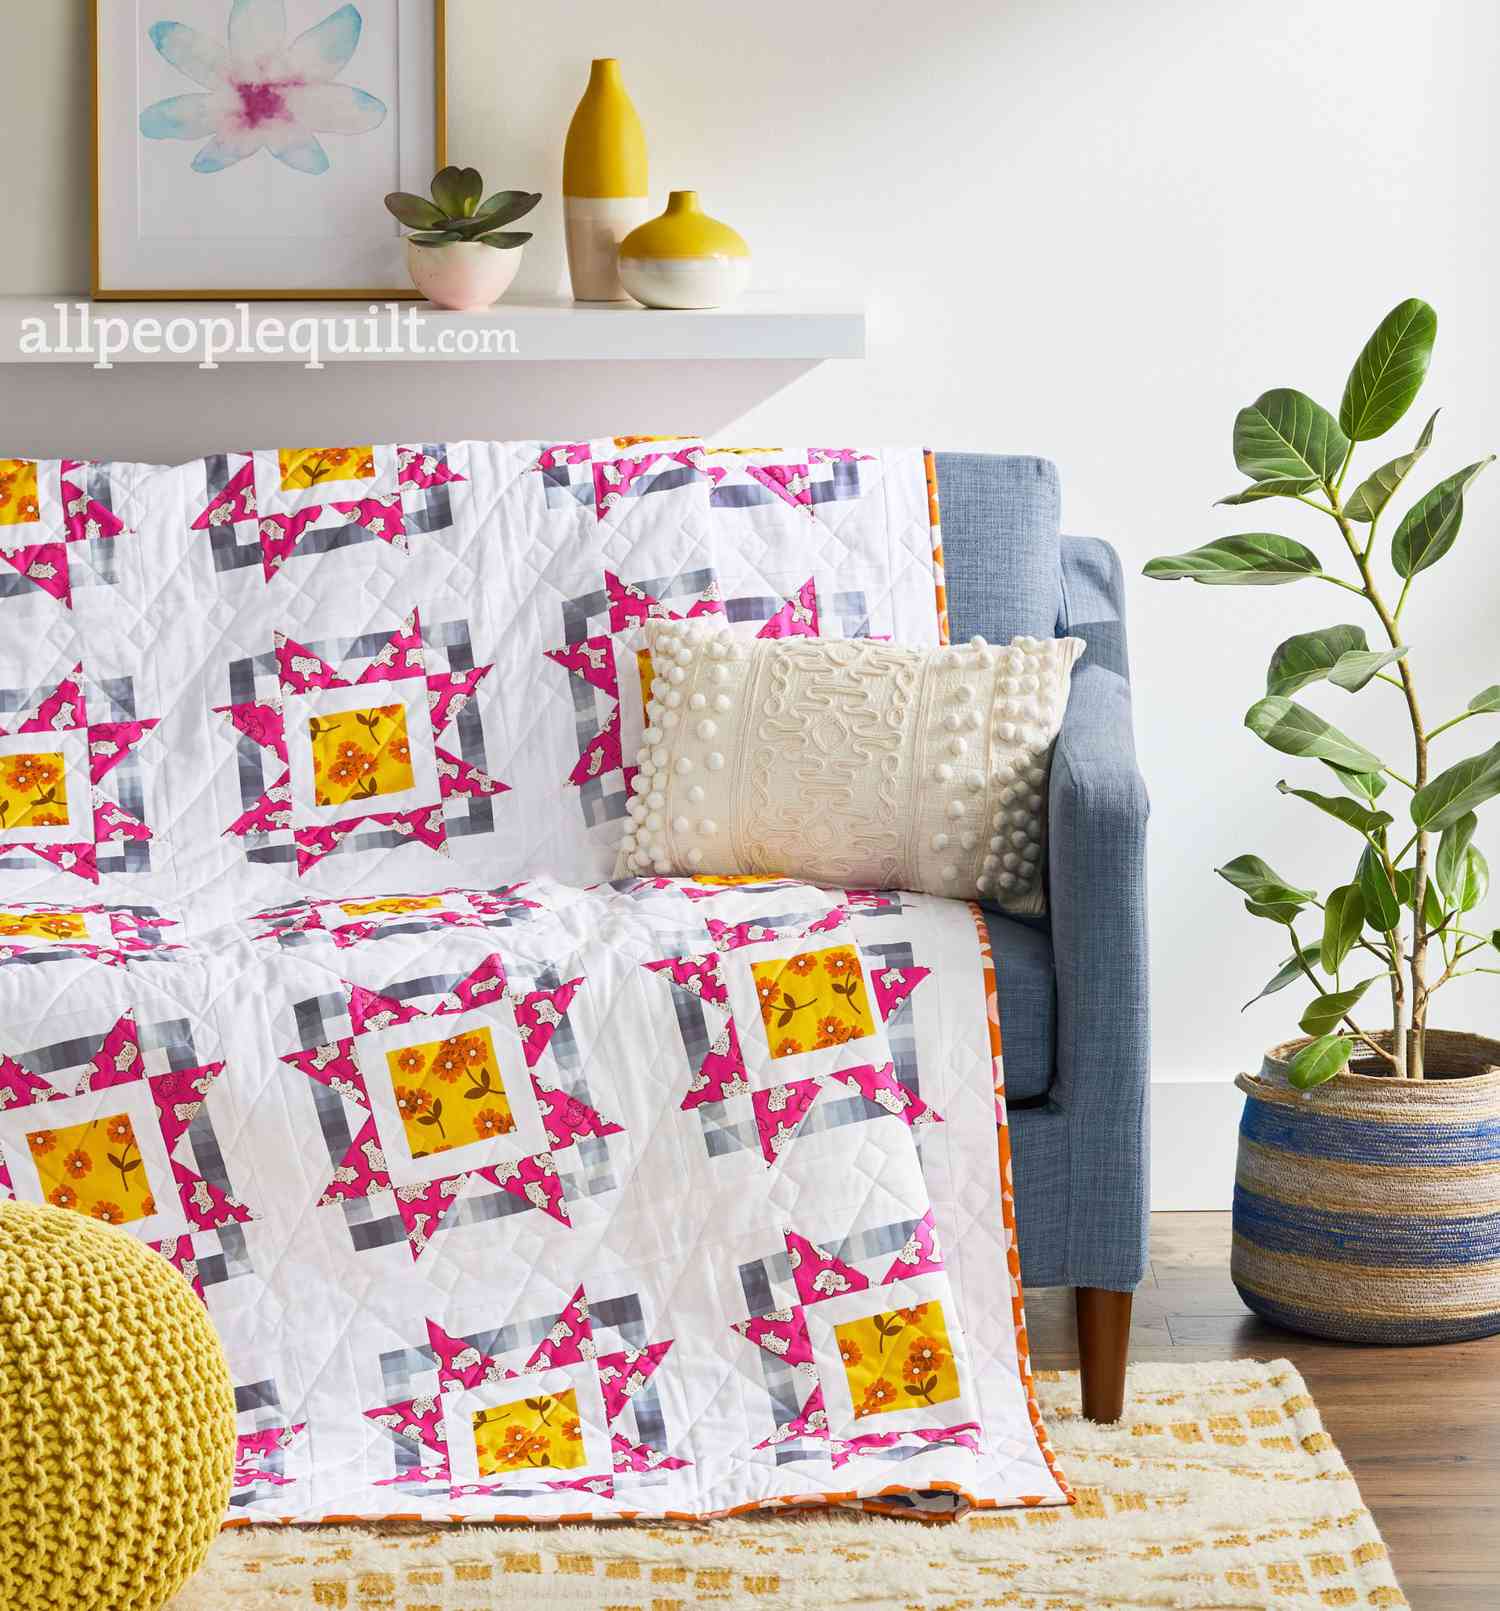 Quilts & More Summer 2020 | AllPeopleQuilt.com